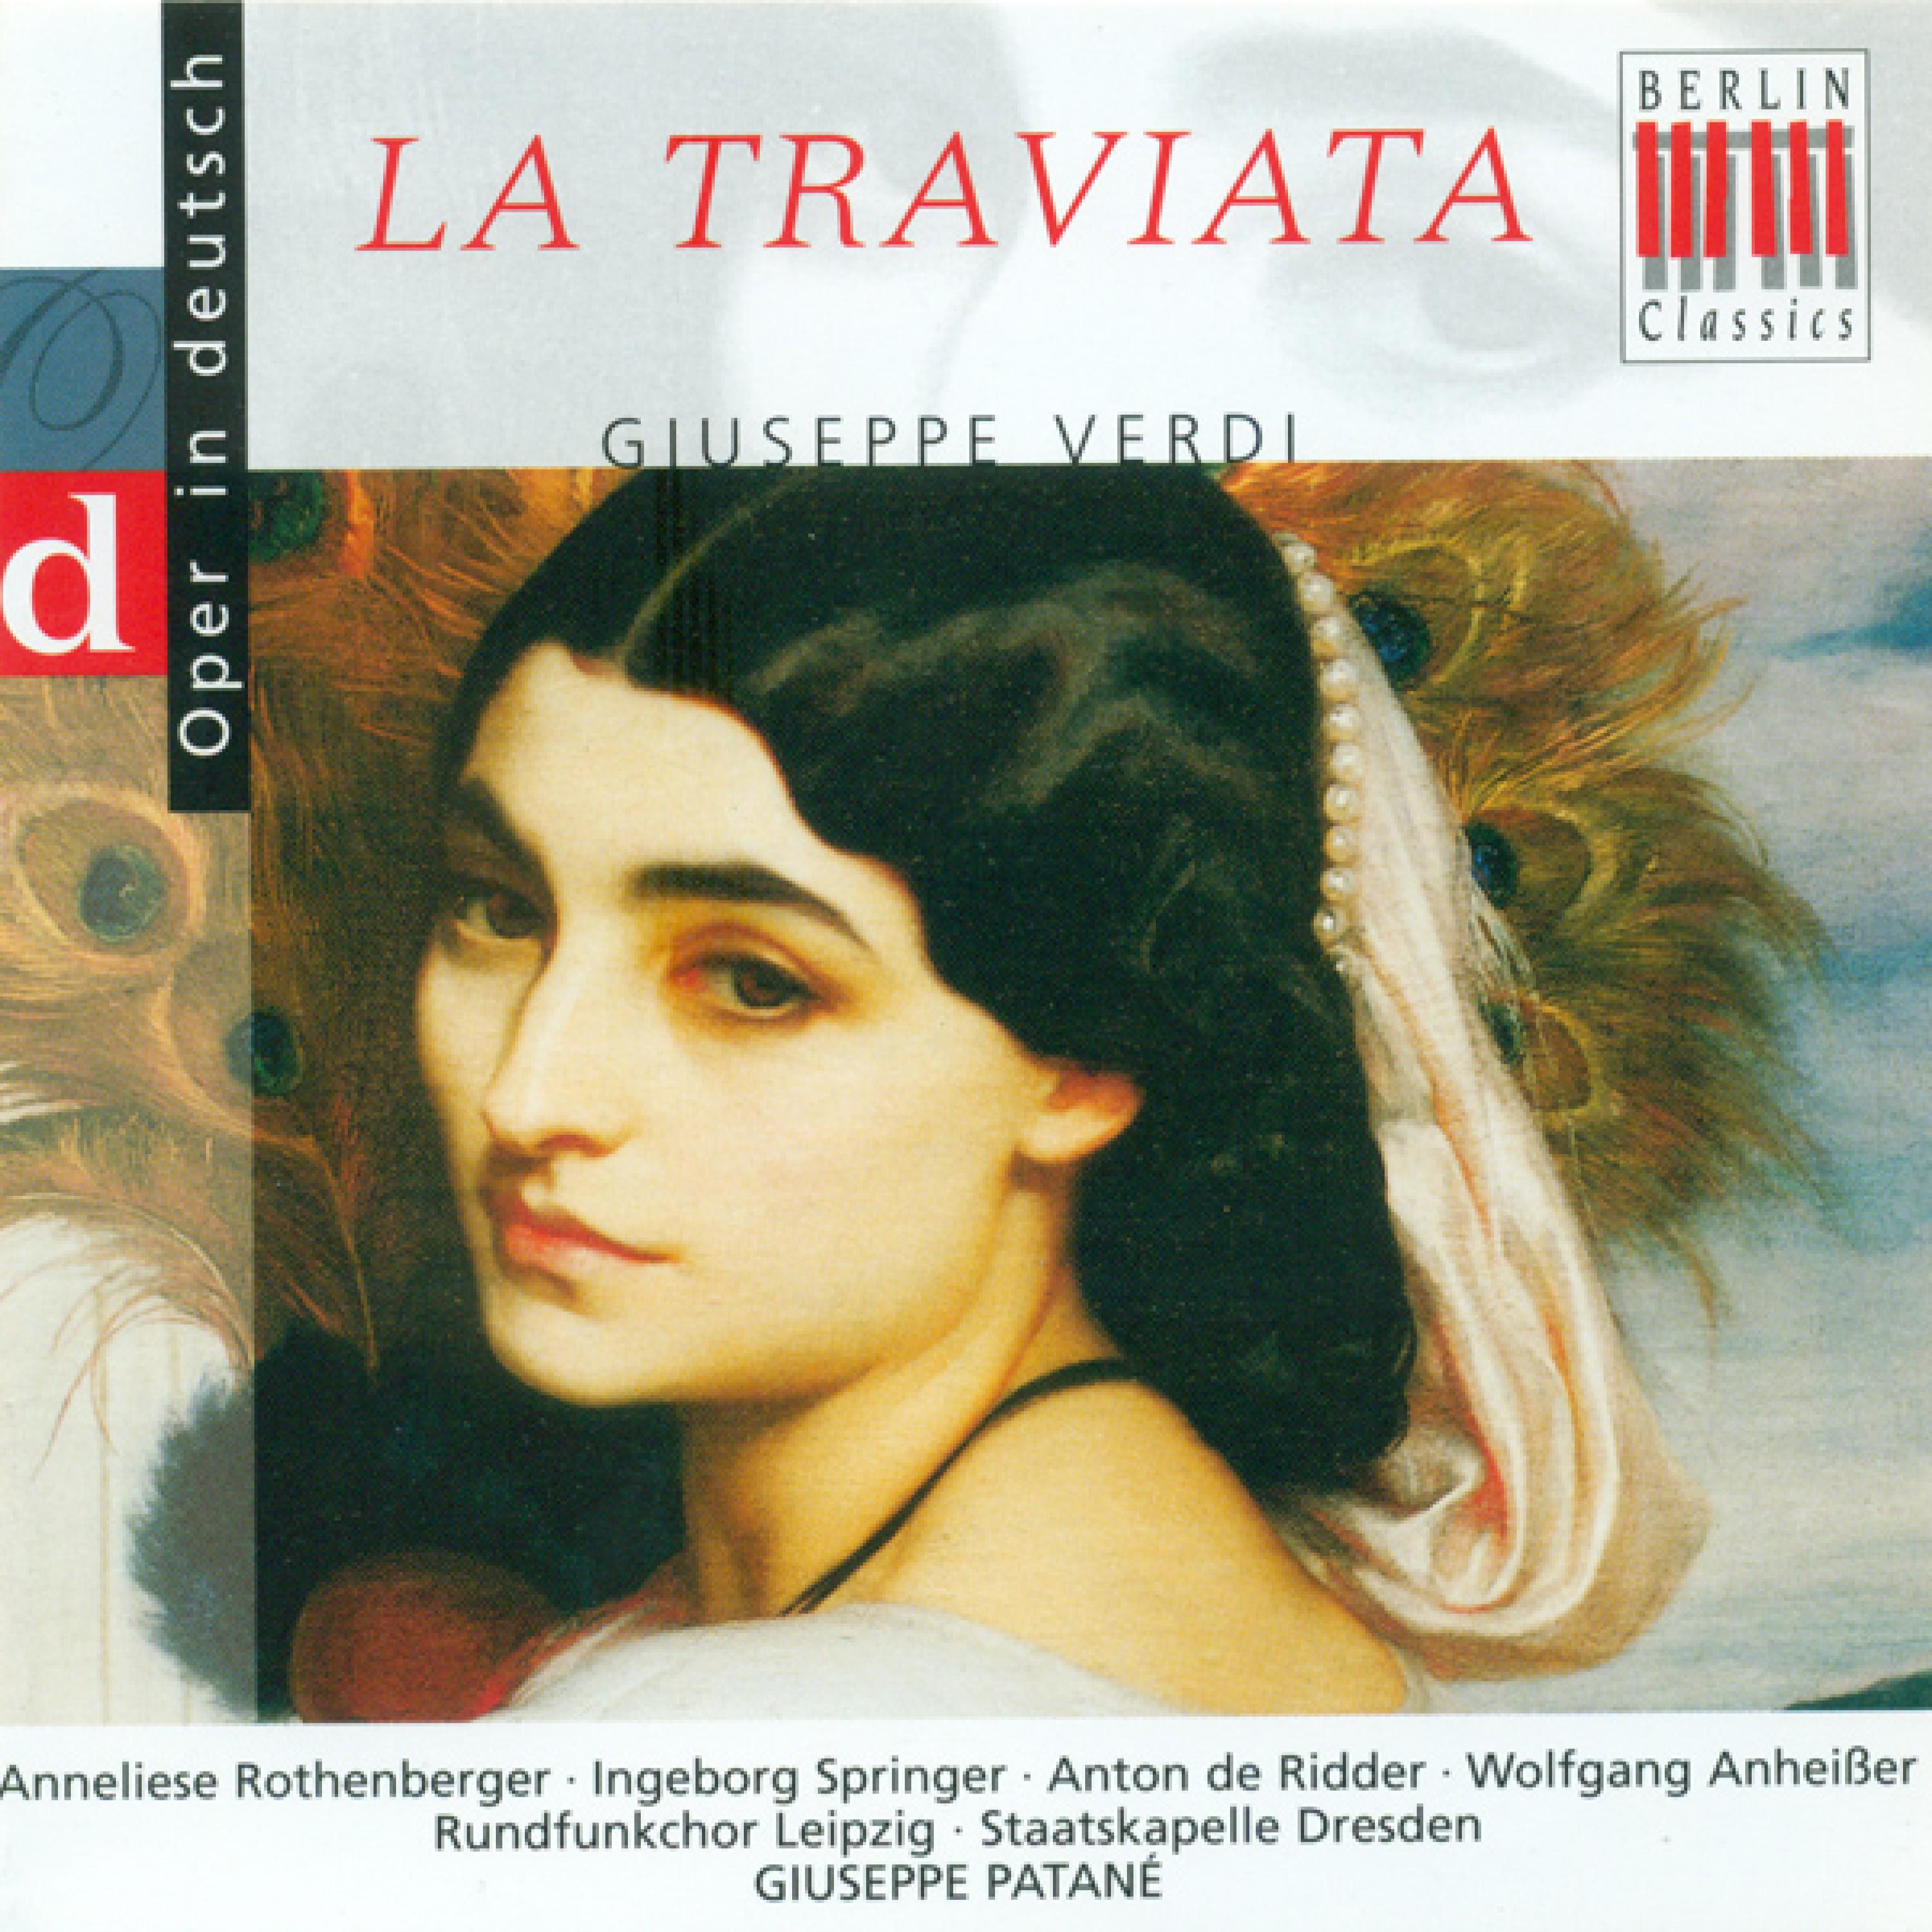 La Traviata, Act III: "Nimm hier, das ist ein Bild von mir"